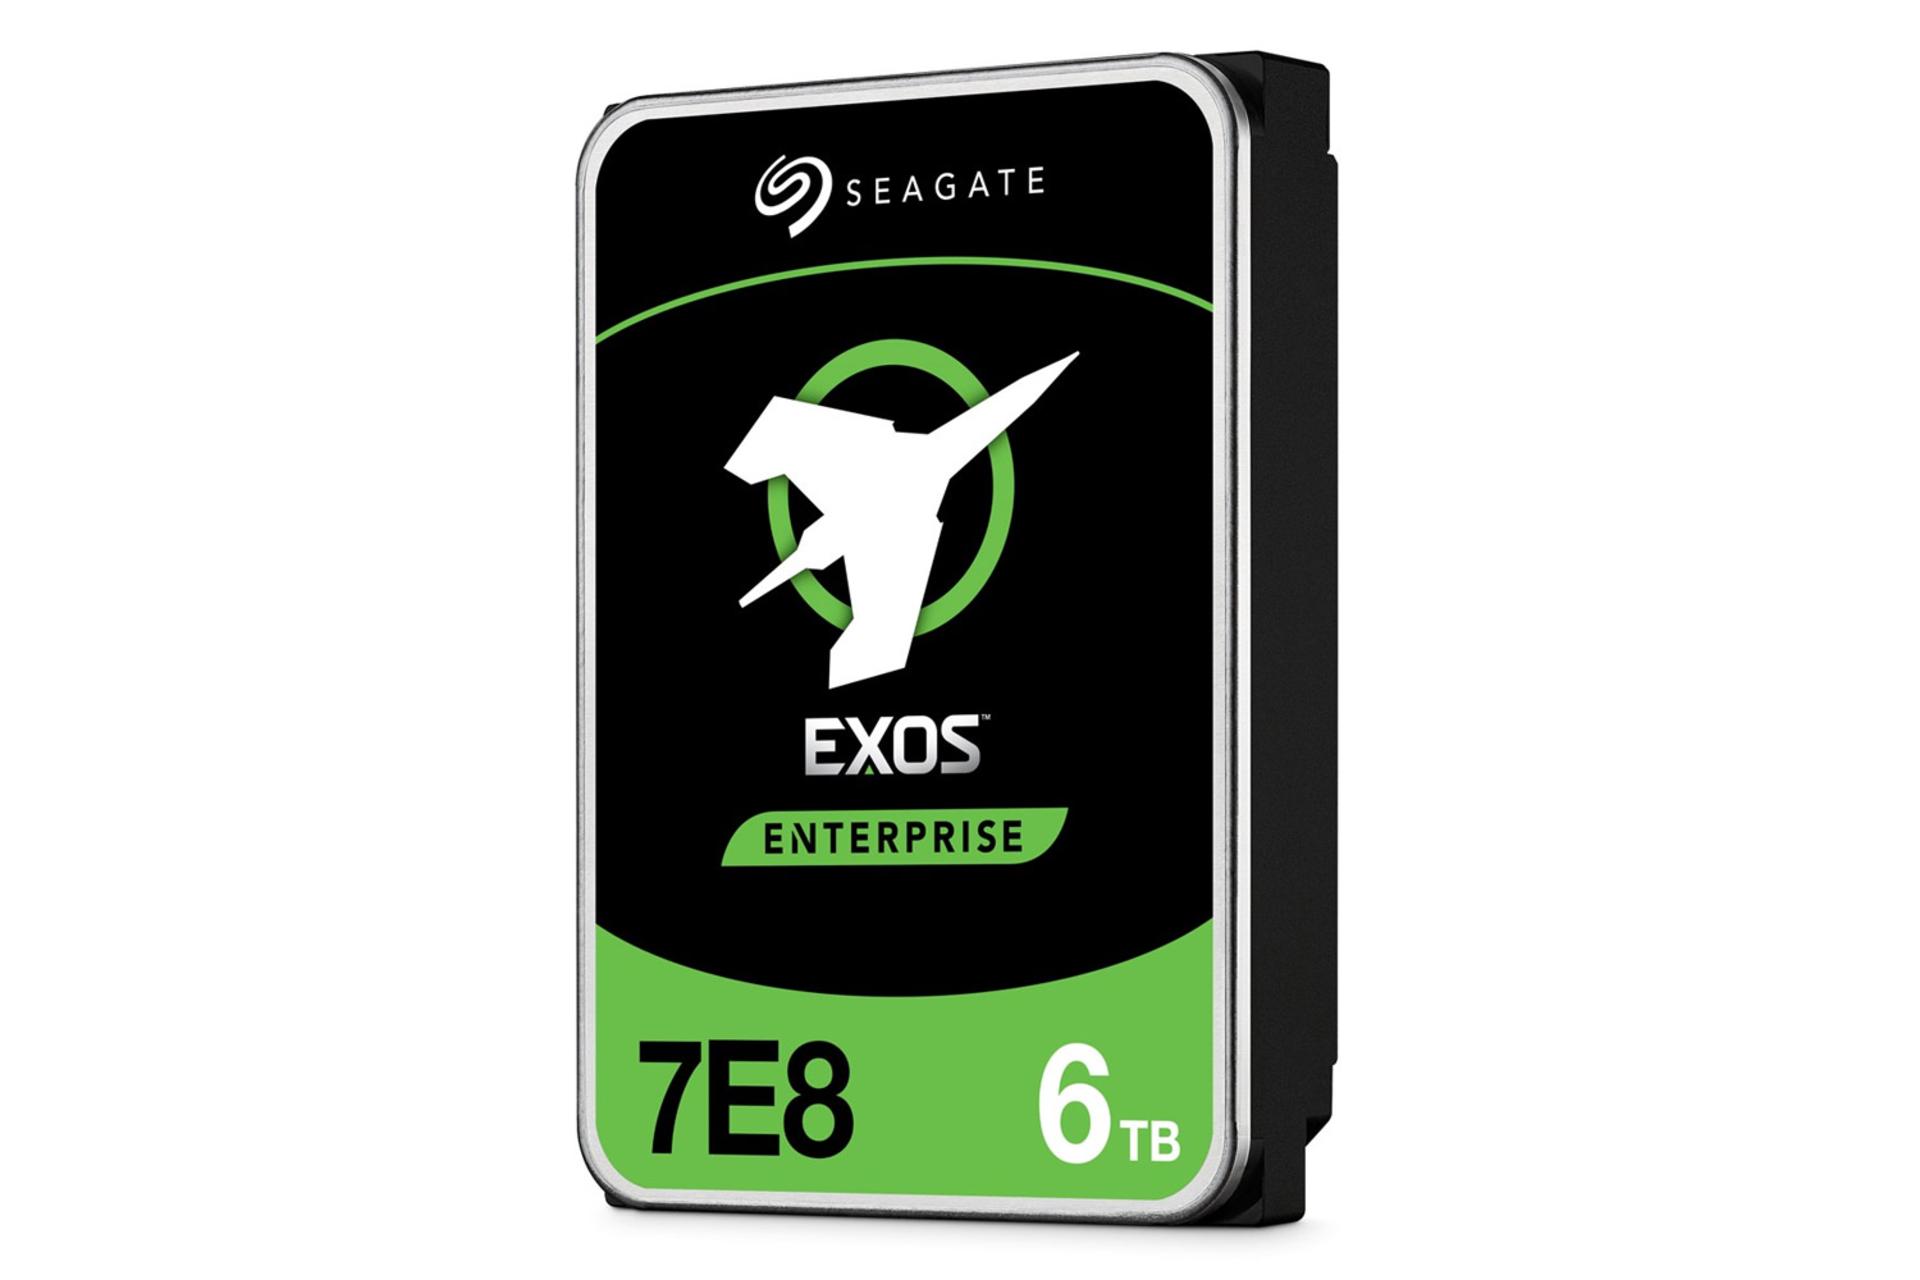 هارد دیسک سیگیت Exos 7E8 ST6000NM021A ظرفیت 6 ترابایت